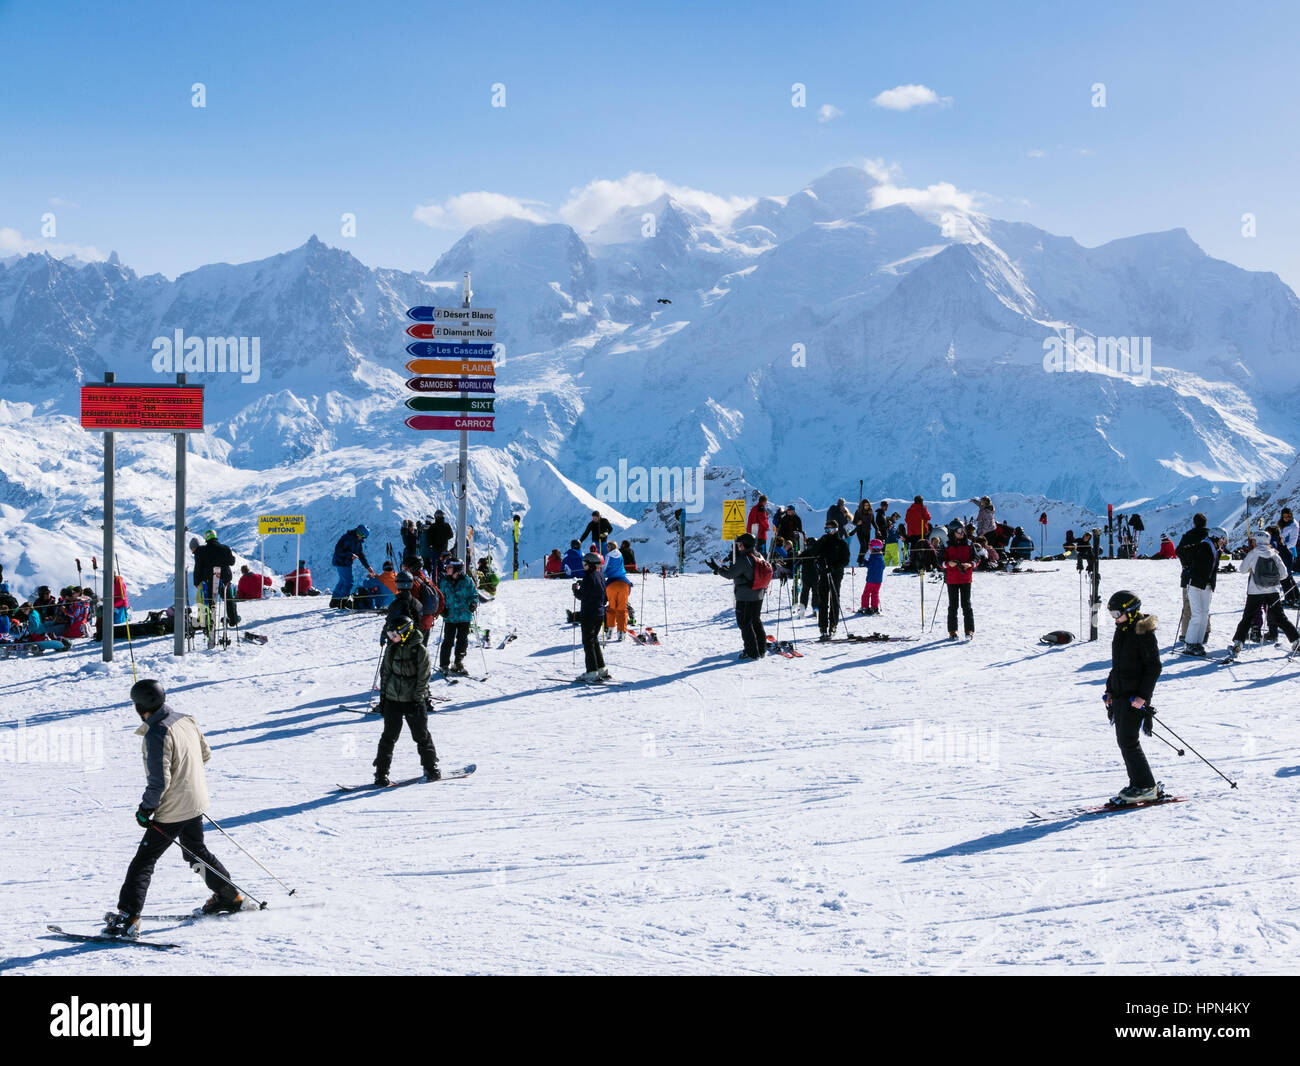 Skifahrer bei Les Grandes Platieres in Le Grand Massif Skigebiet mit Blick zum schneebedeckten Mont Blanc und Bergen in den französischen Alpen. Flaine, Frankreich Stockfoto